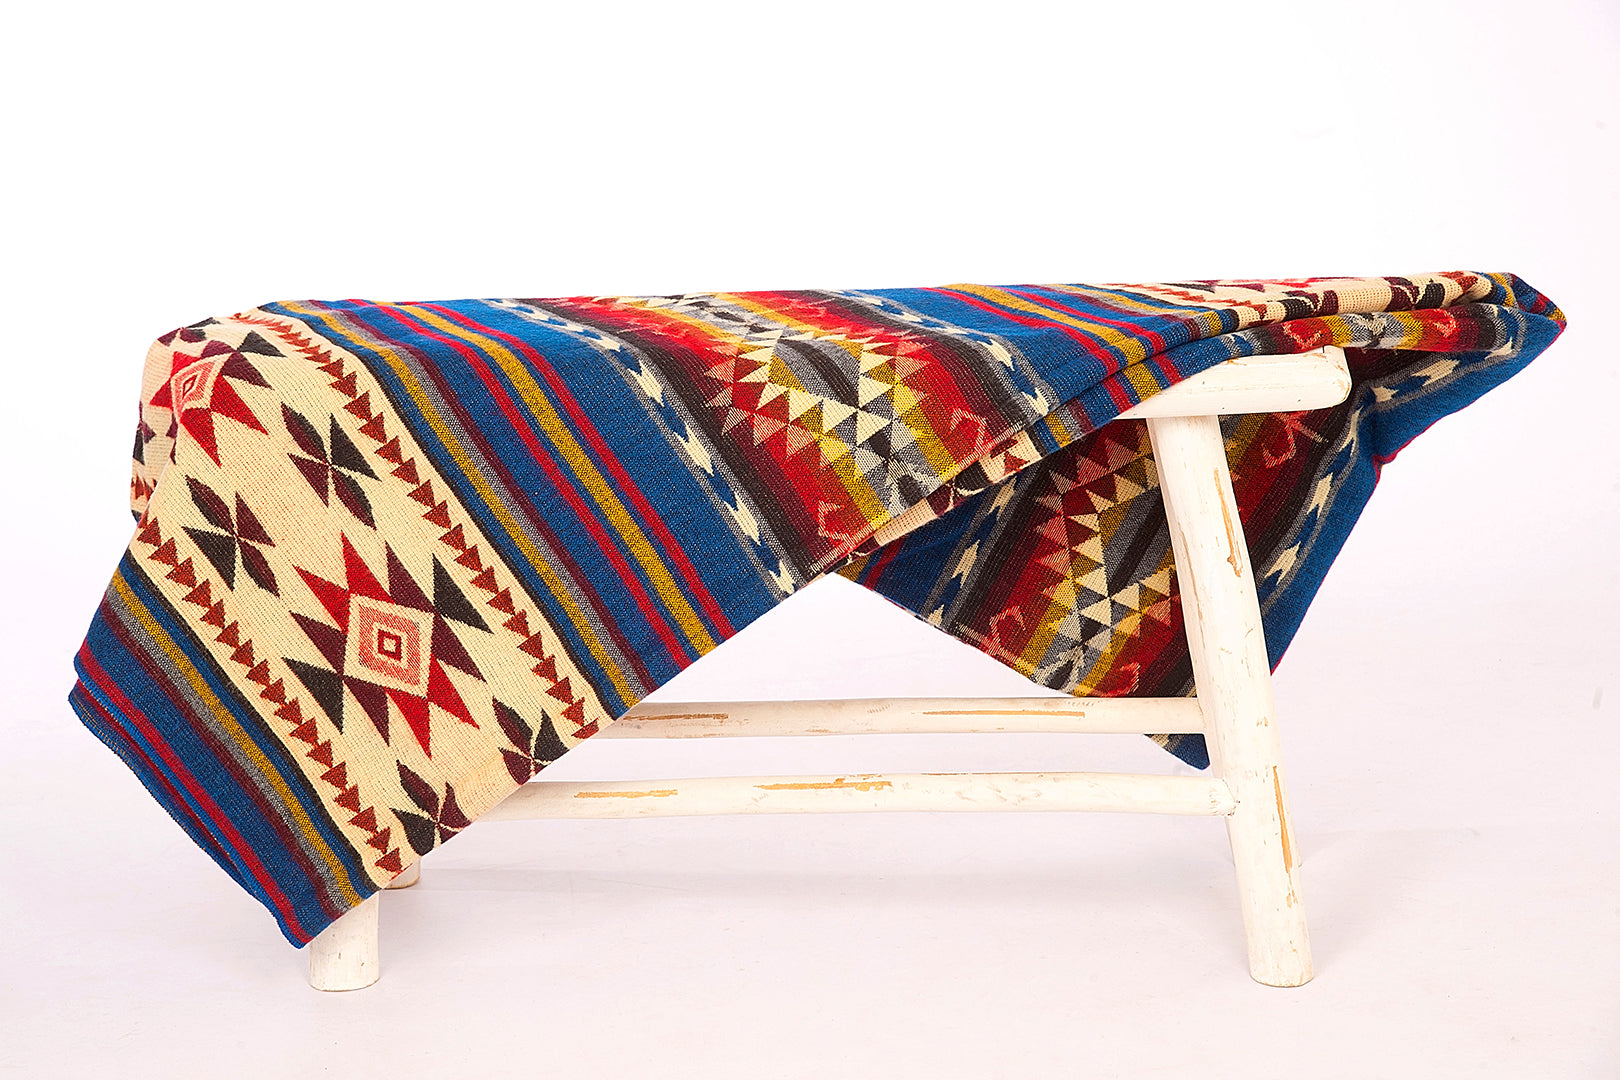 Alpaka Native Decke Cotopaxi Colour Mix